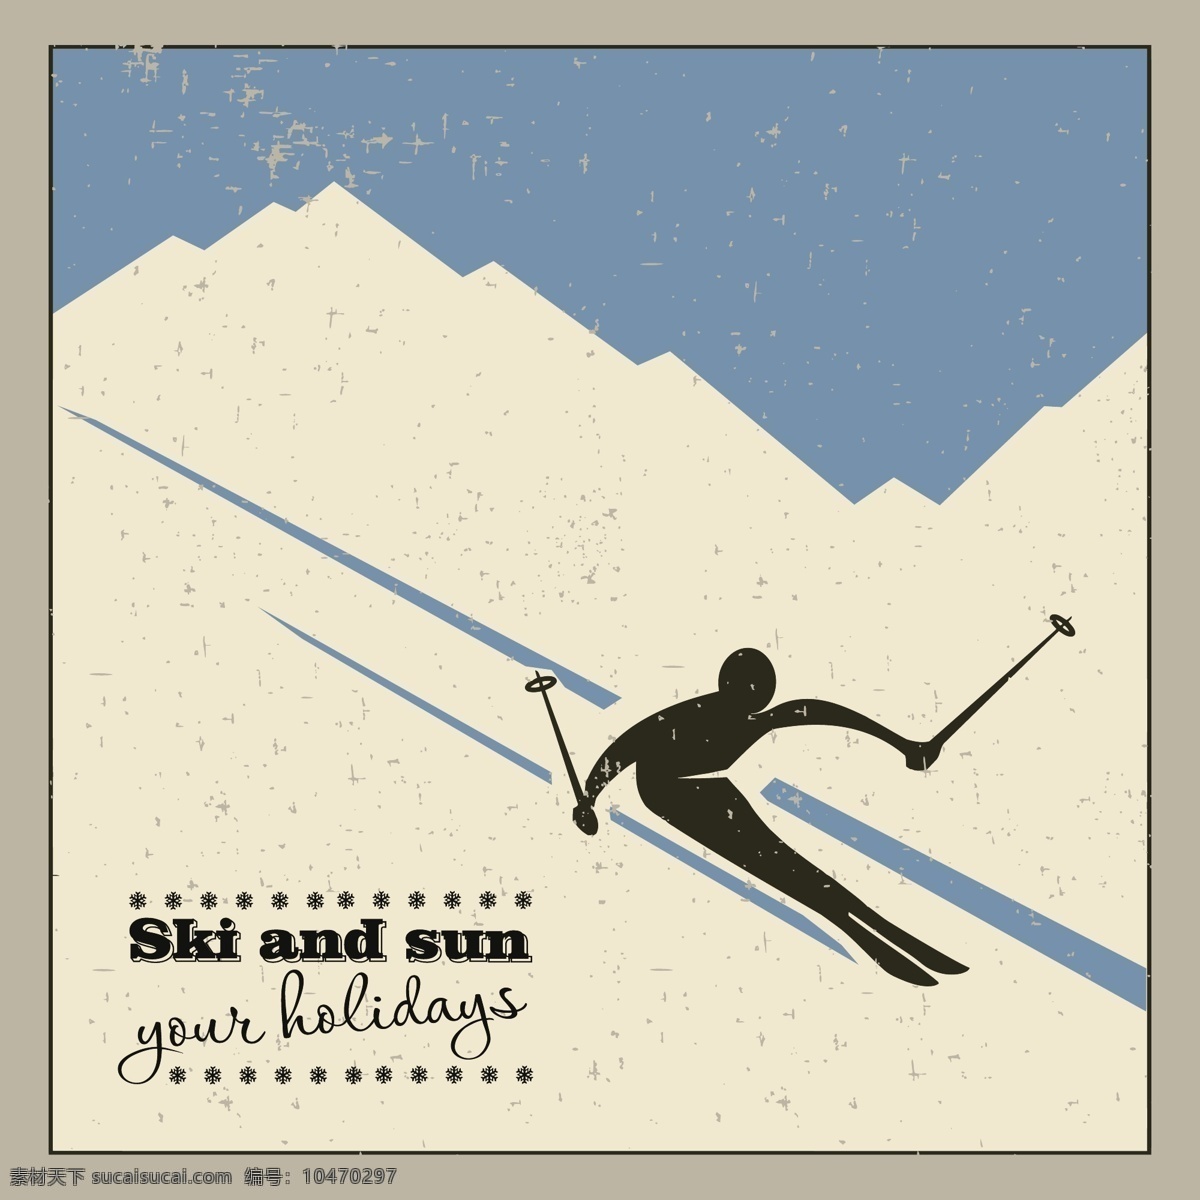 体育运动人物 滑雪 人物剪影 运动会 亚运会 奥运会 雪上运动 矢量图 体育 运动 标识 矢量人物 矢量 职业人物